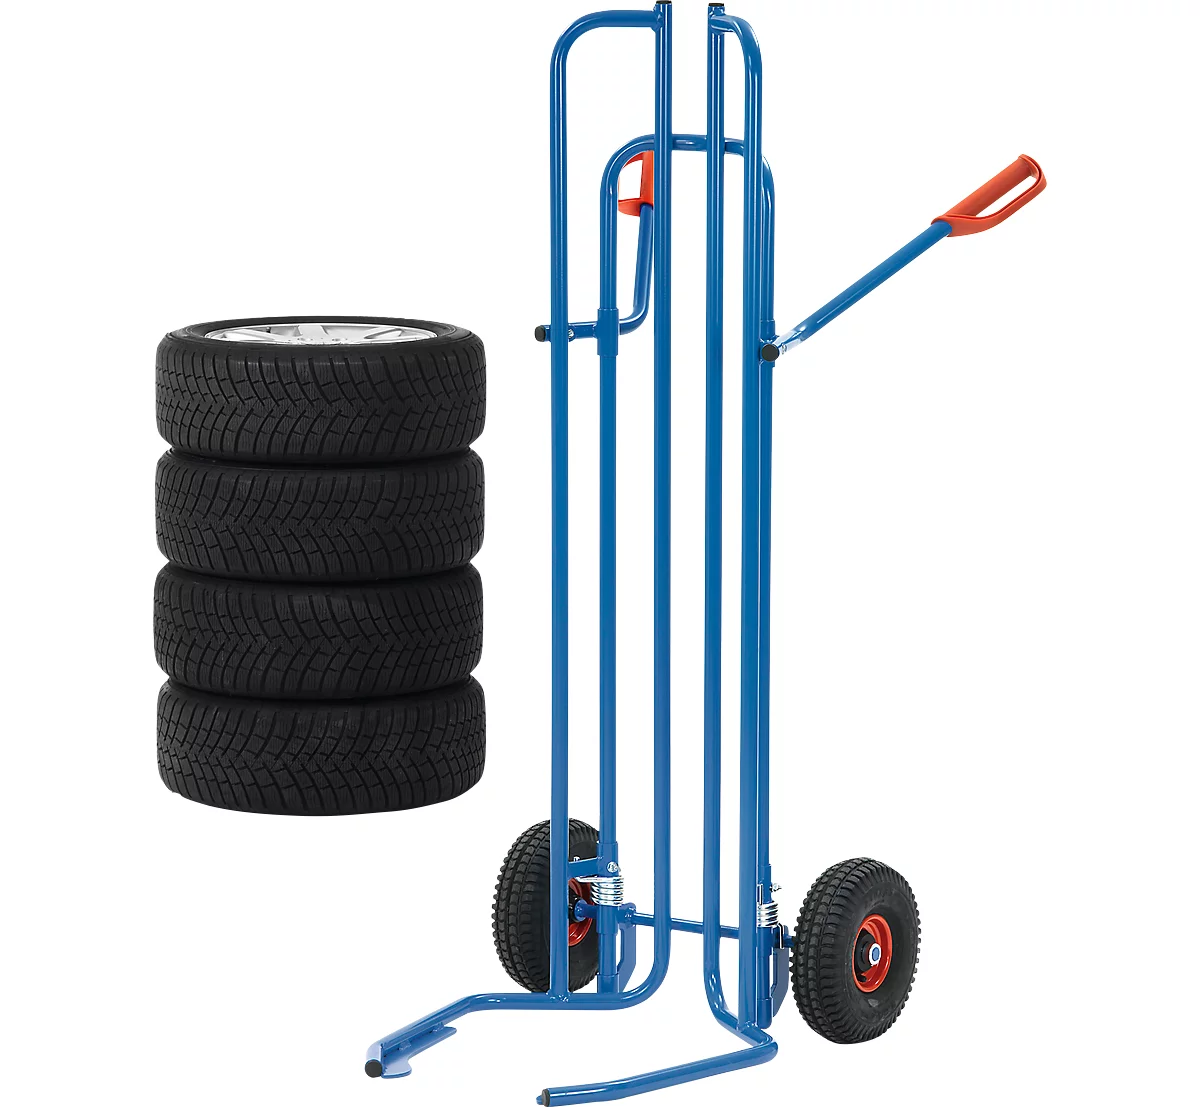 Carretilla para neumáticos, tubo de acero, para 8 neumáticos, ø 450-750 mm, hasta 200 kg, ruedas neumáticas, azul brillante (RAL 5007)